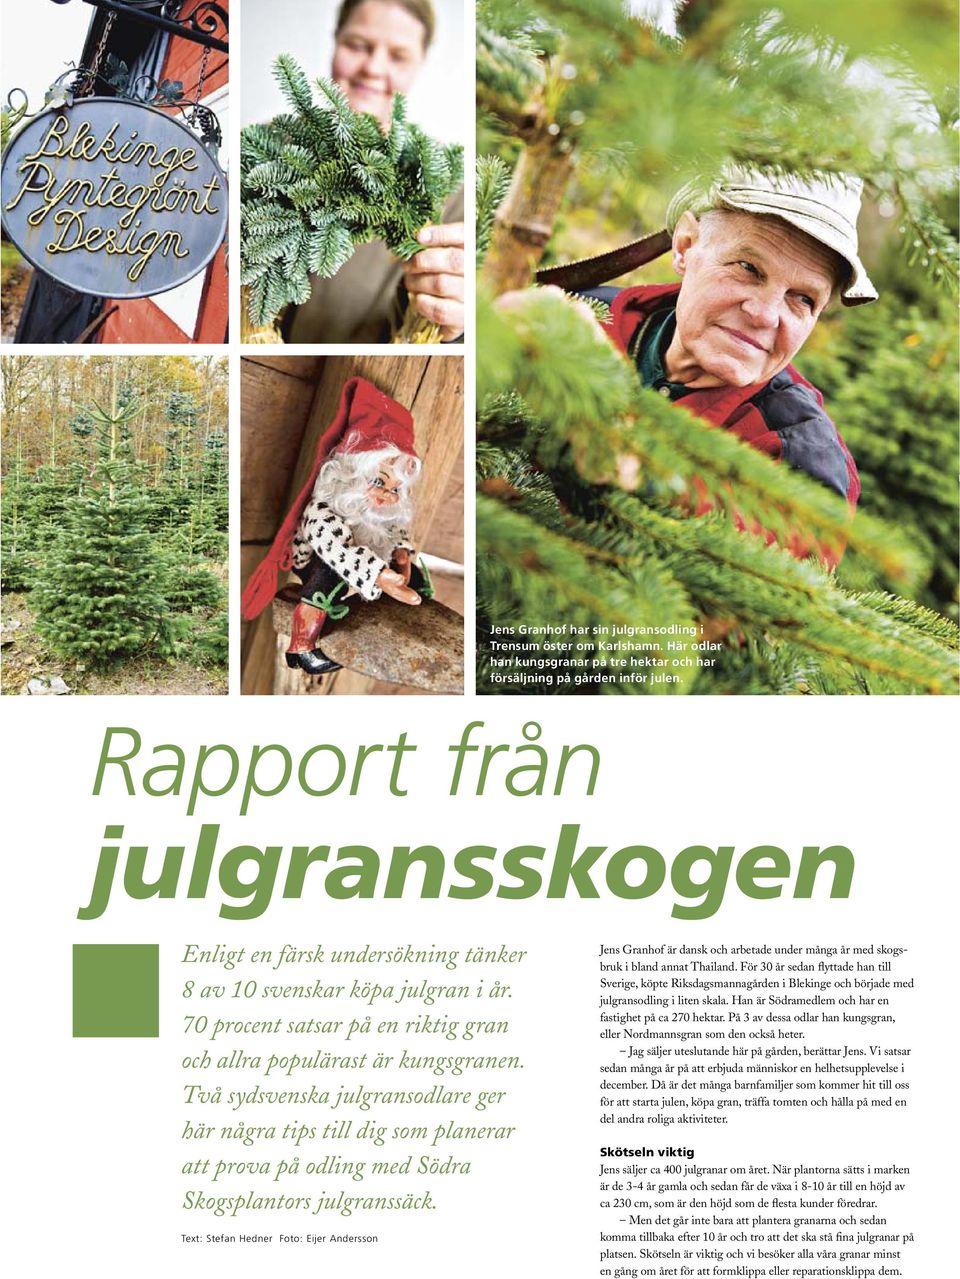 Två sydsvenska julgransodlare ger här några tips till dig som planerar att prova på odling med Södra Skogsplantors julgranssäck.